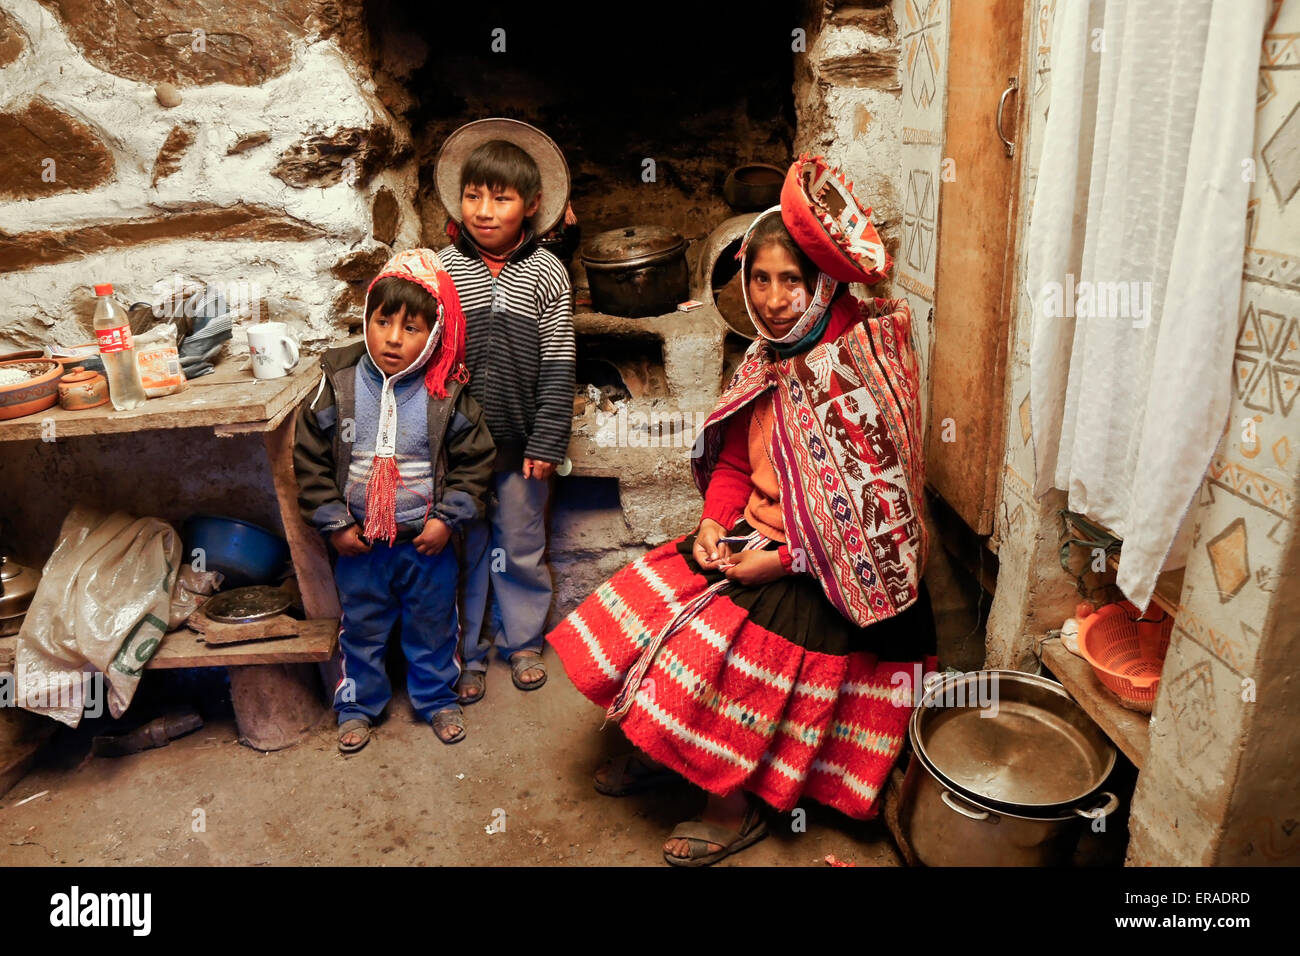 Les Indiens Quechua femme et enfants dans la maison, Patacancha, Pérou Banque D'Images